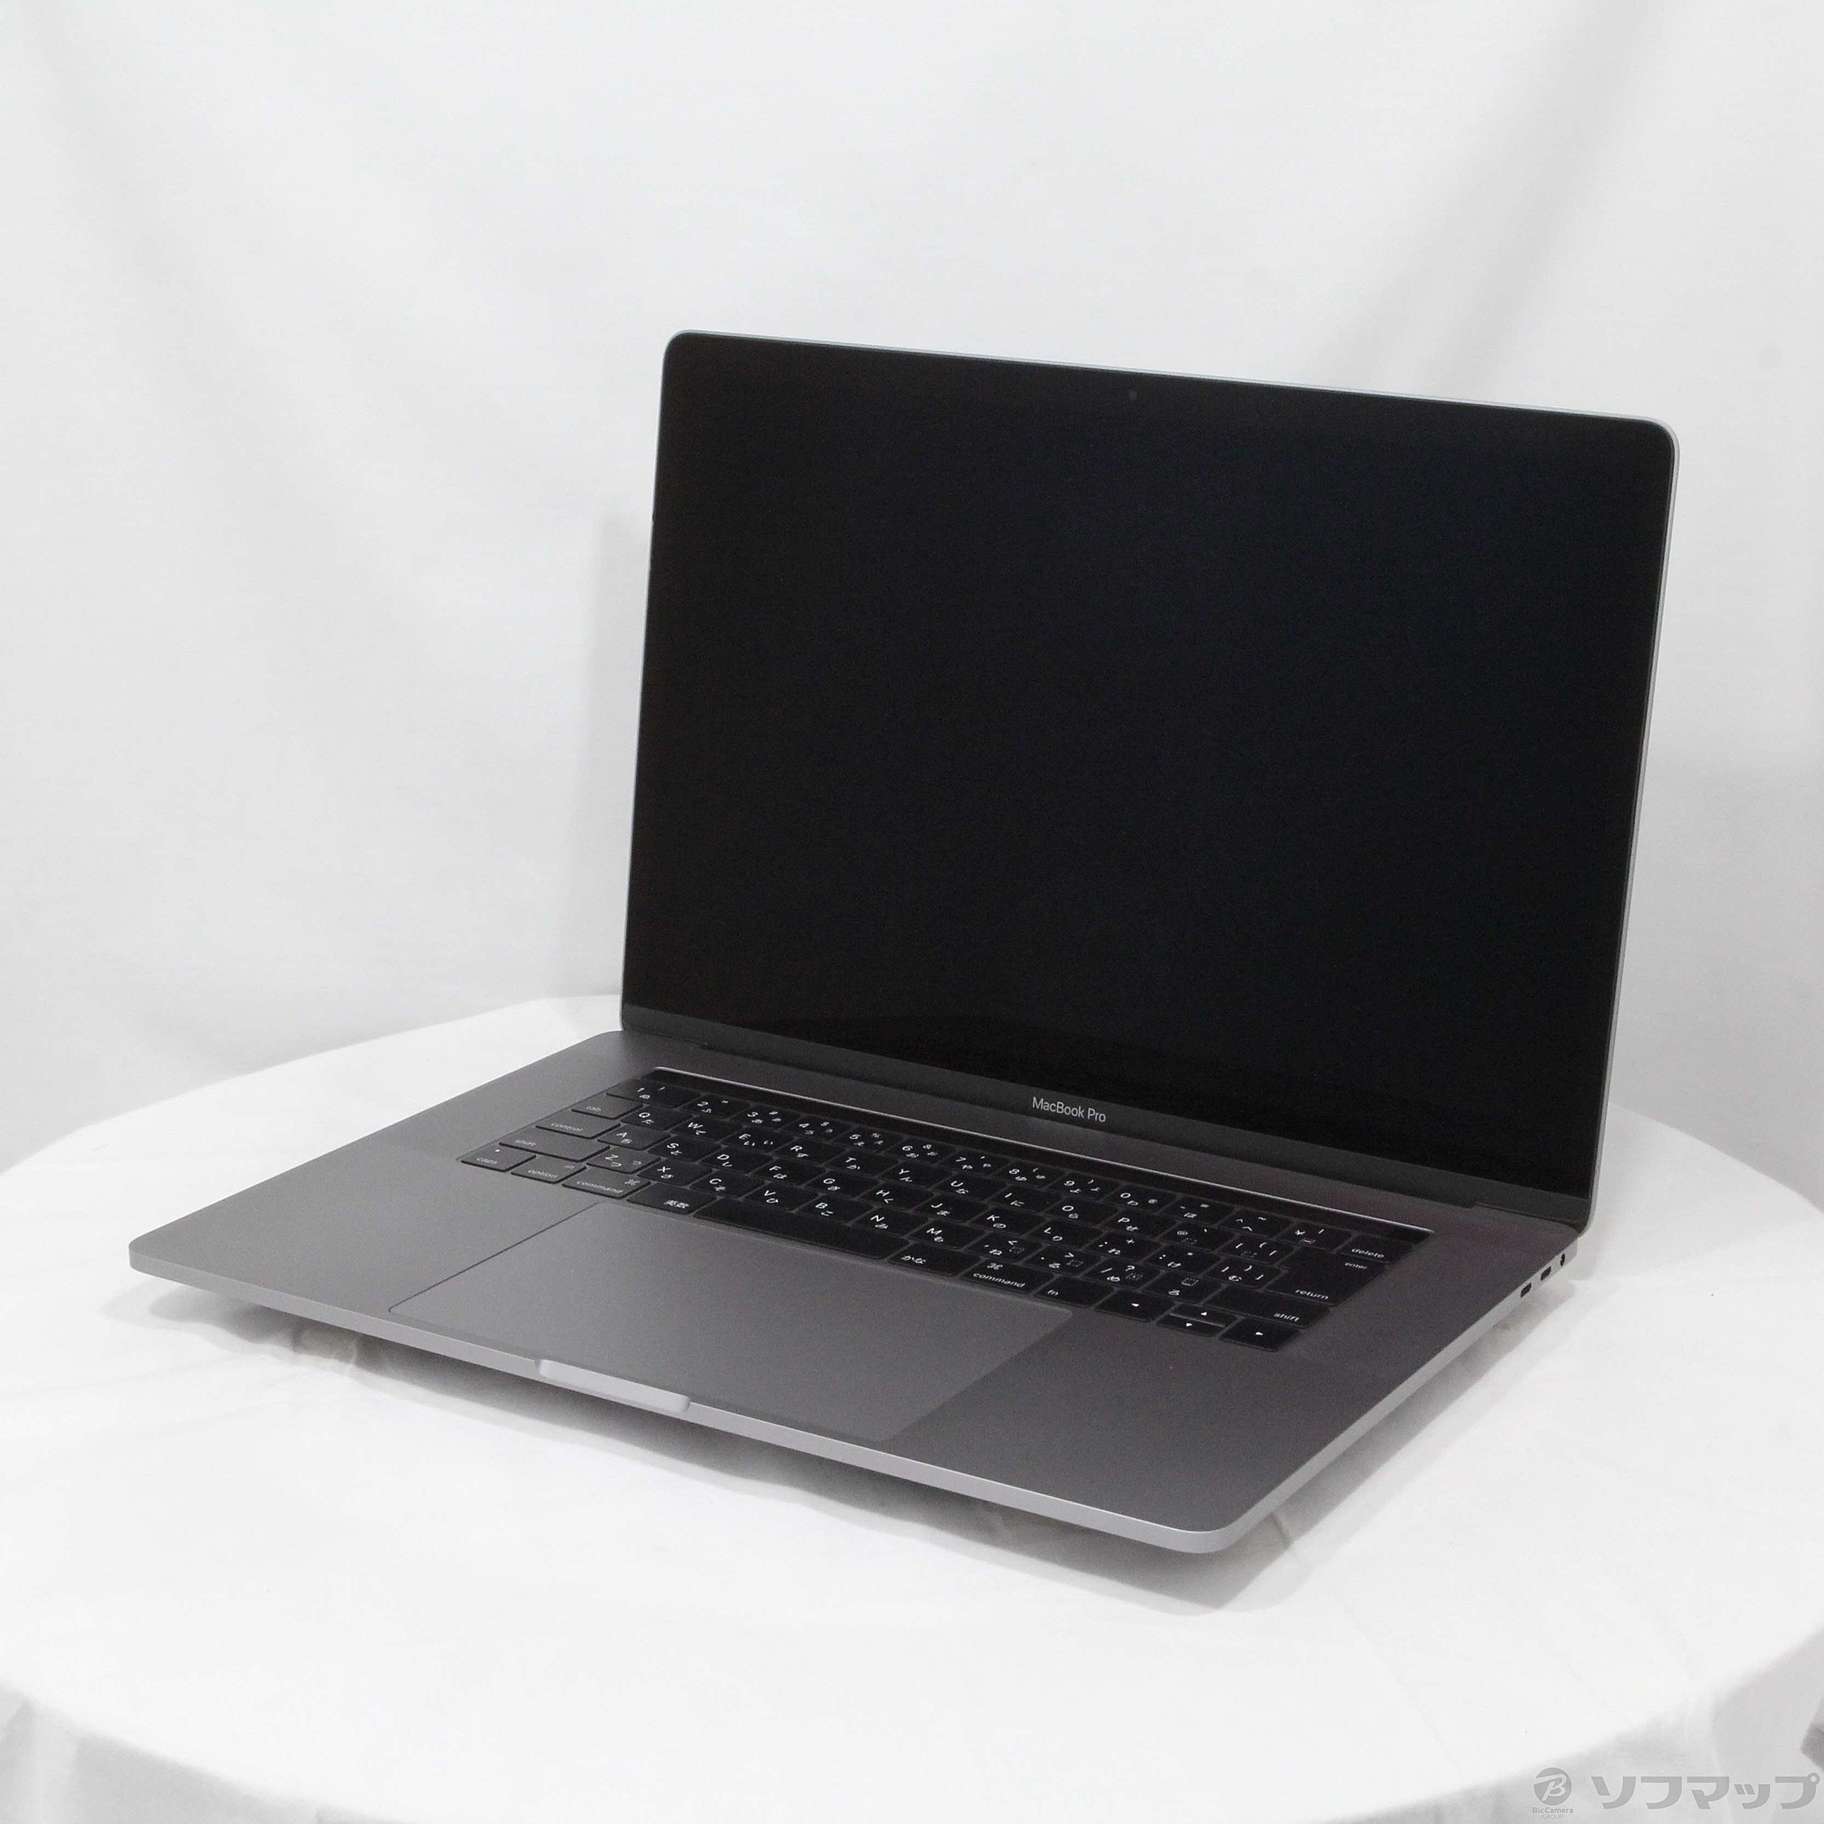 MacBook pro 15 MLH32J/A corei7 メモリ16g